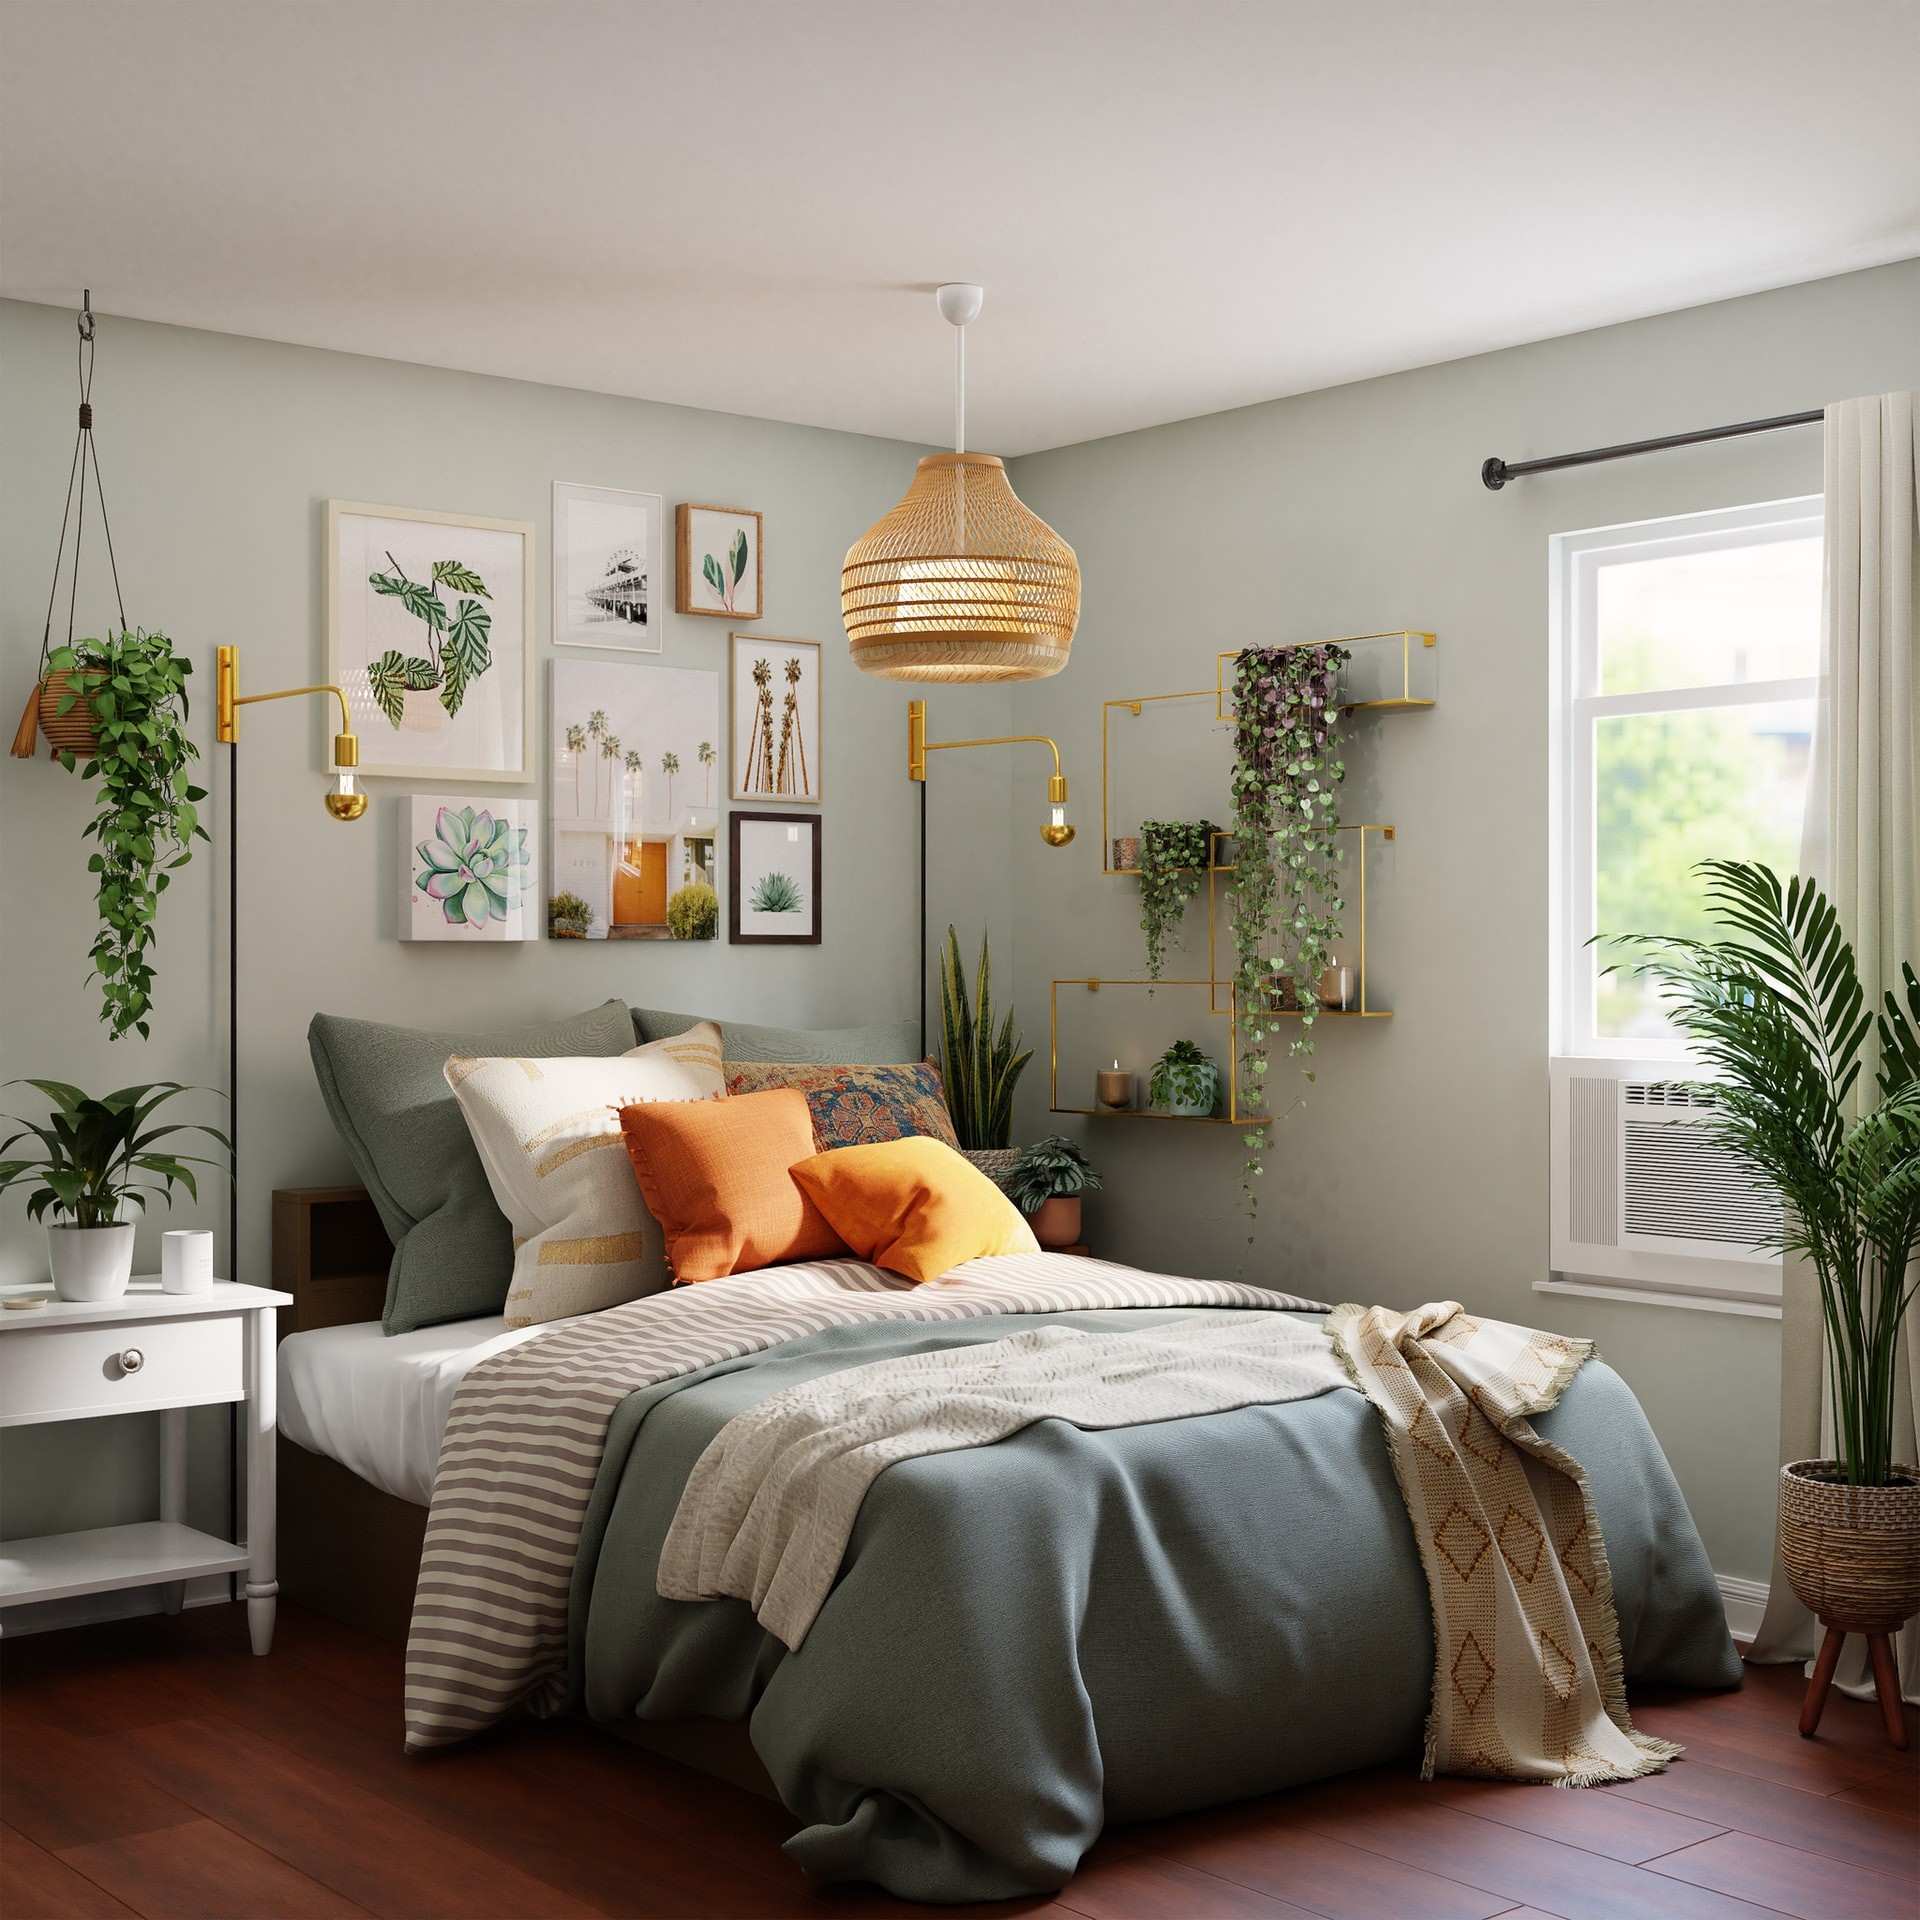 10 идей как сделать комнату уютной